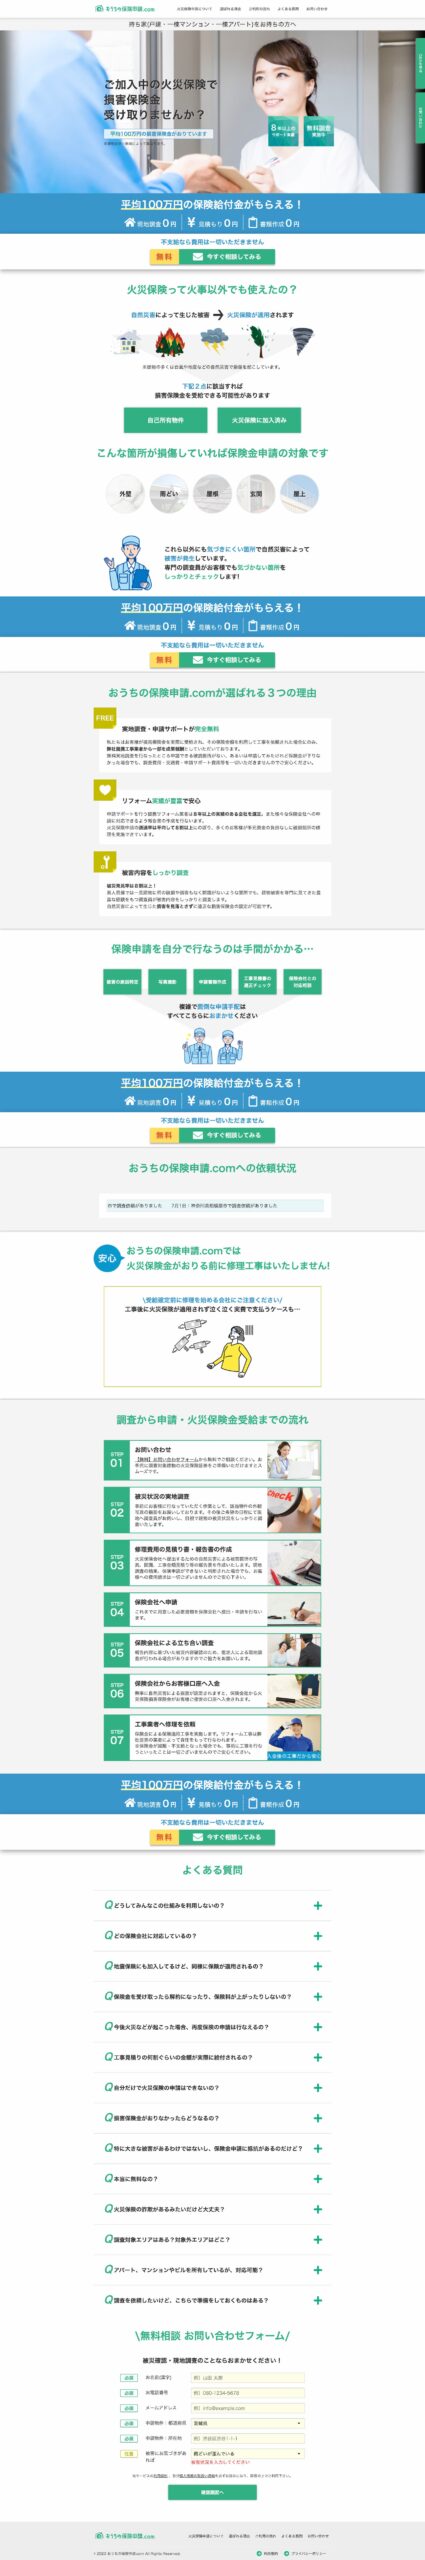 PC-おうちの保険申請.com-火災保険利用で無料修理_リフォームをサポート -ouchi-hoken-shinsei.com